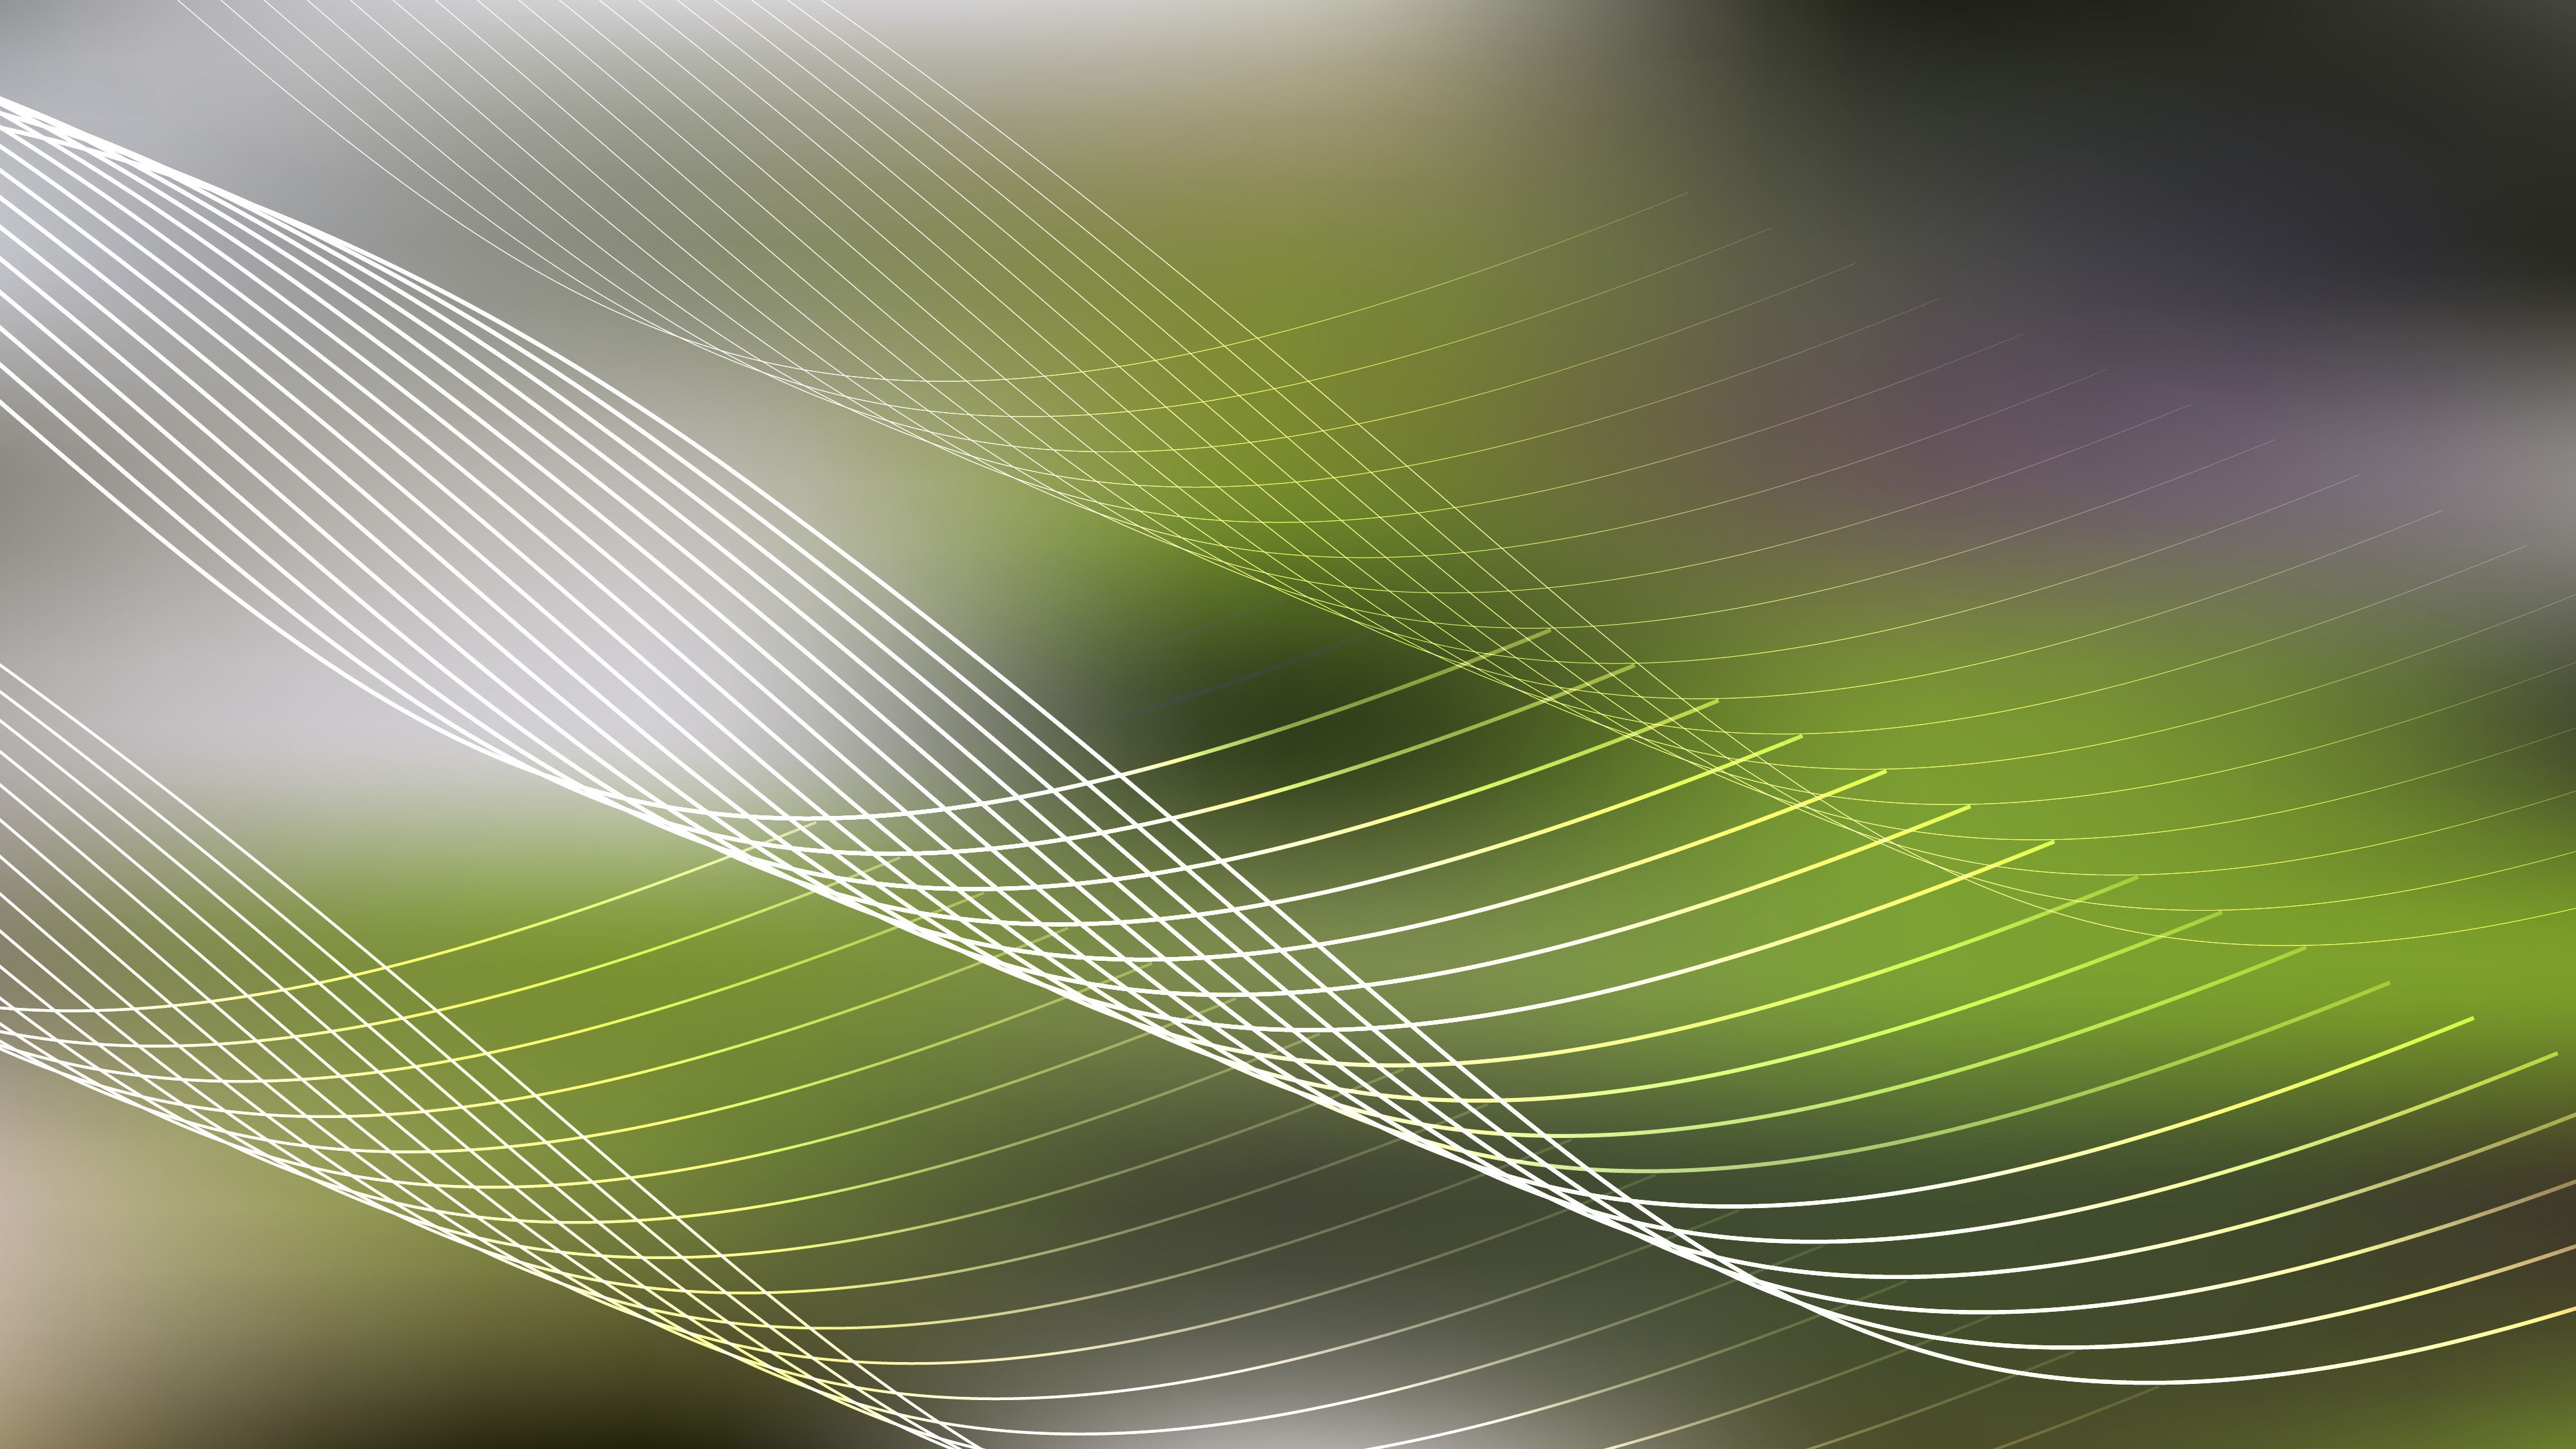 Green Spider Web Line Background Image Design